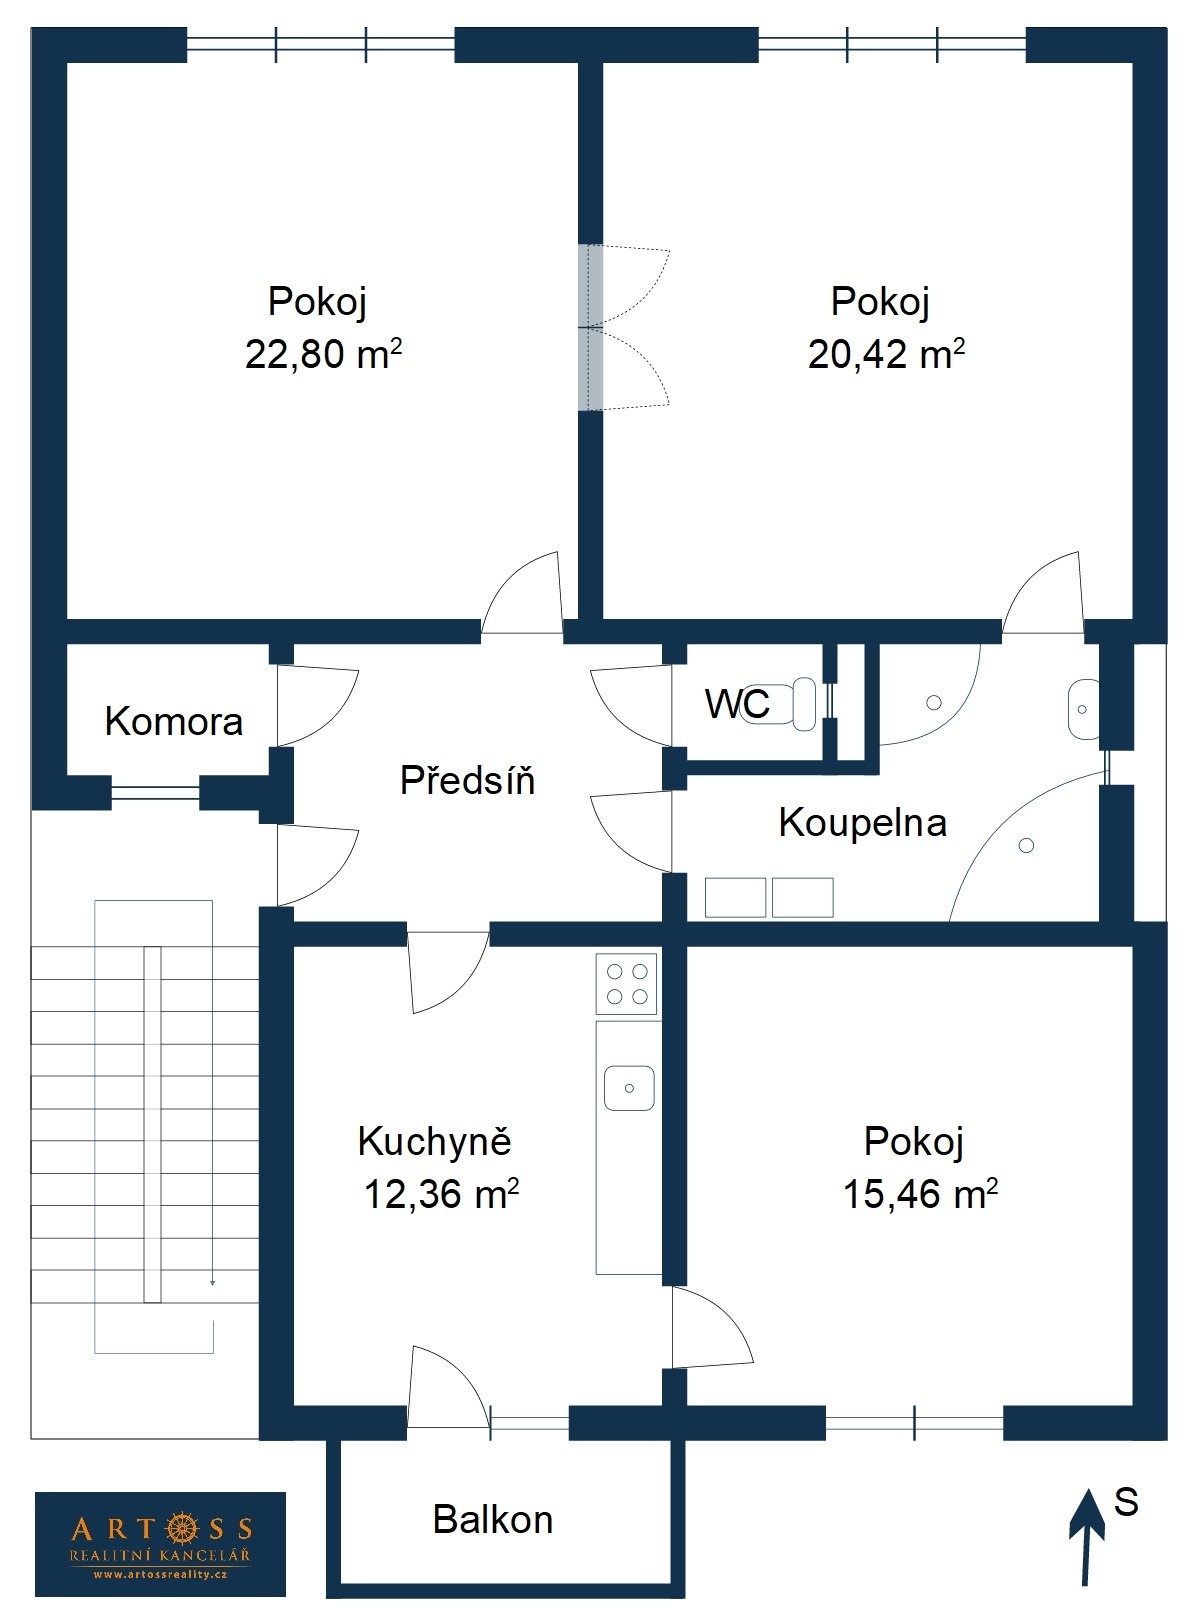 Situační náčrt bytu